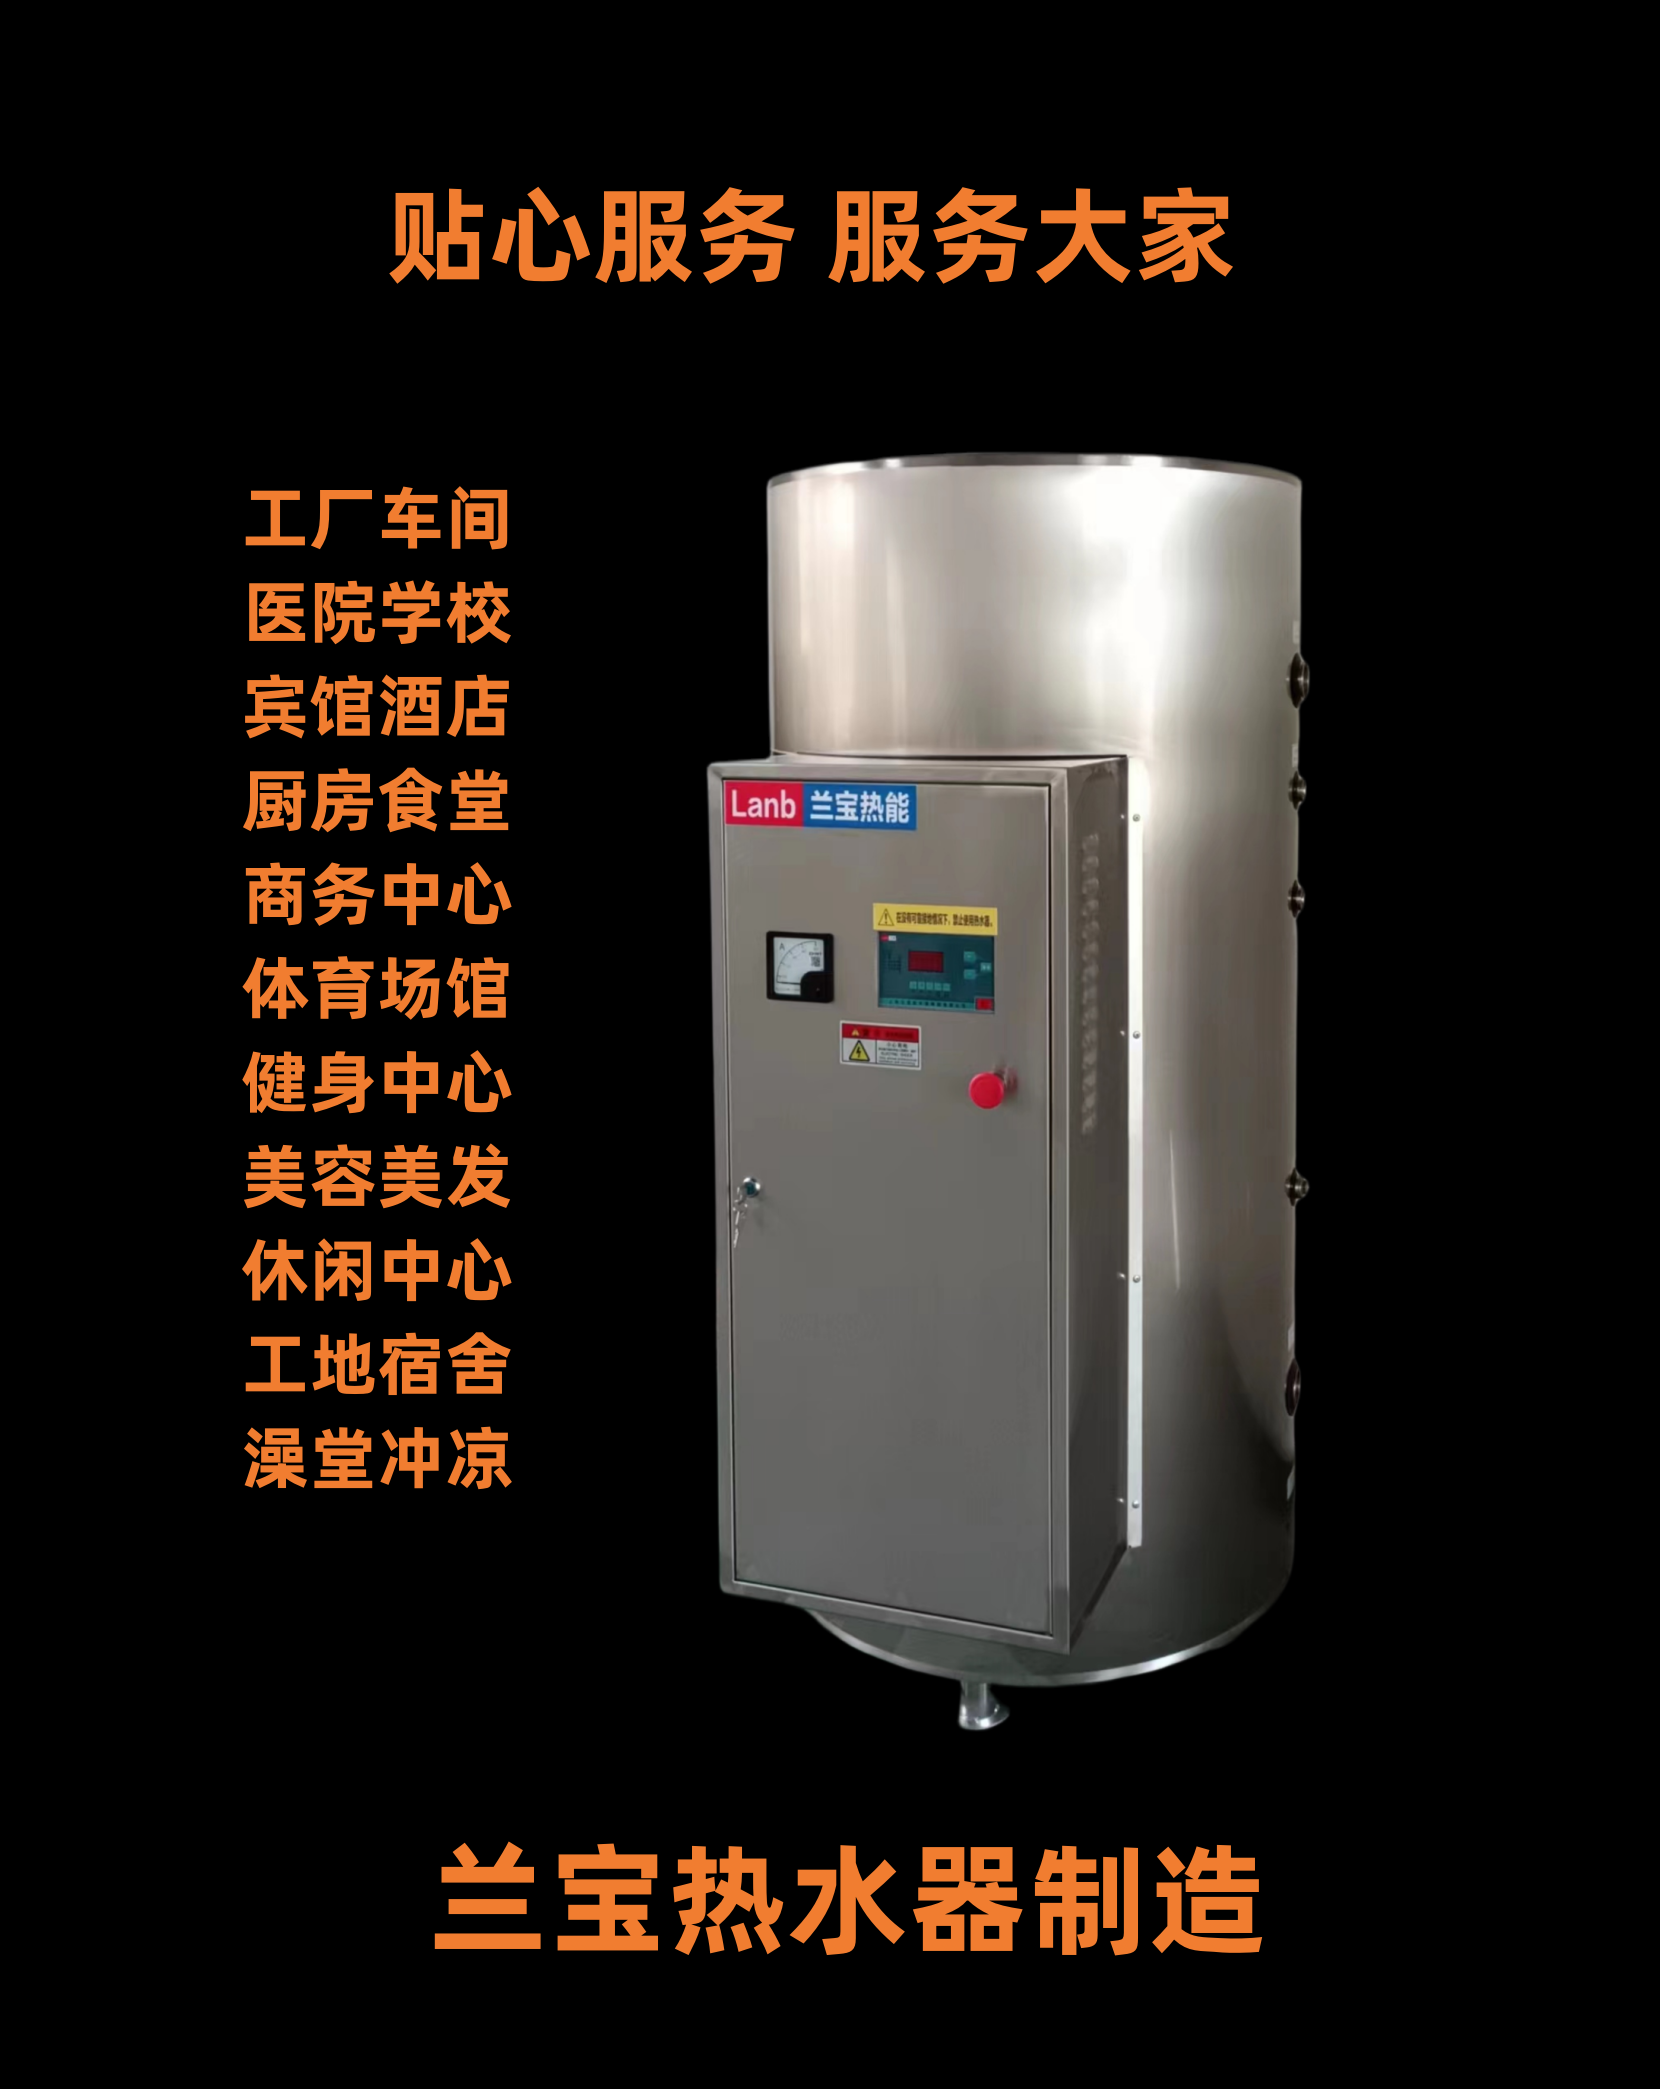 供应上海兰宝JLB-360-18热水器